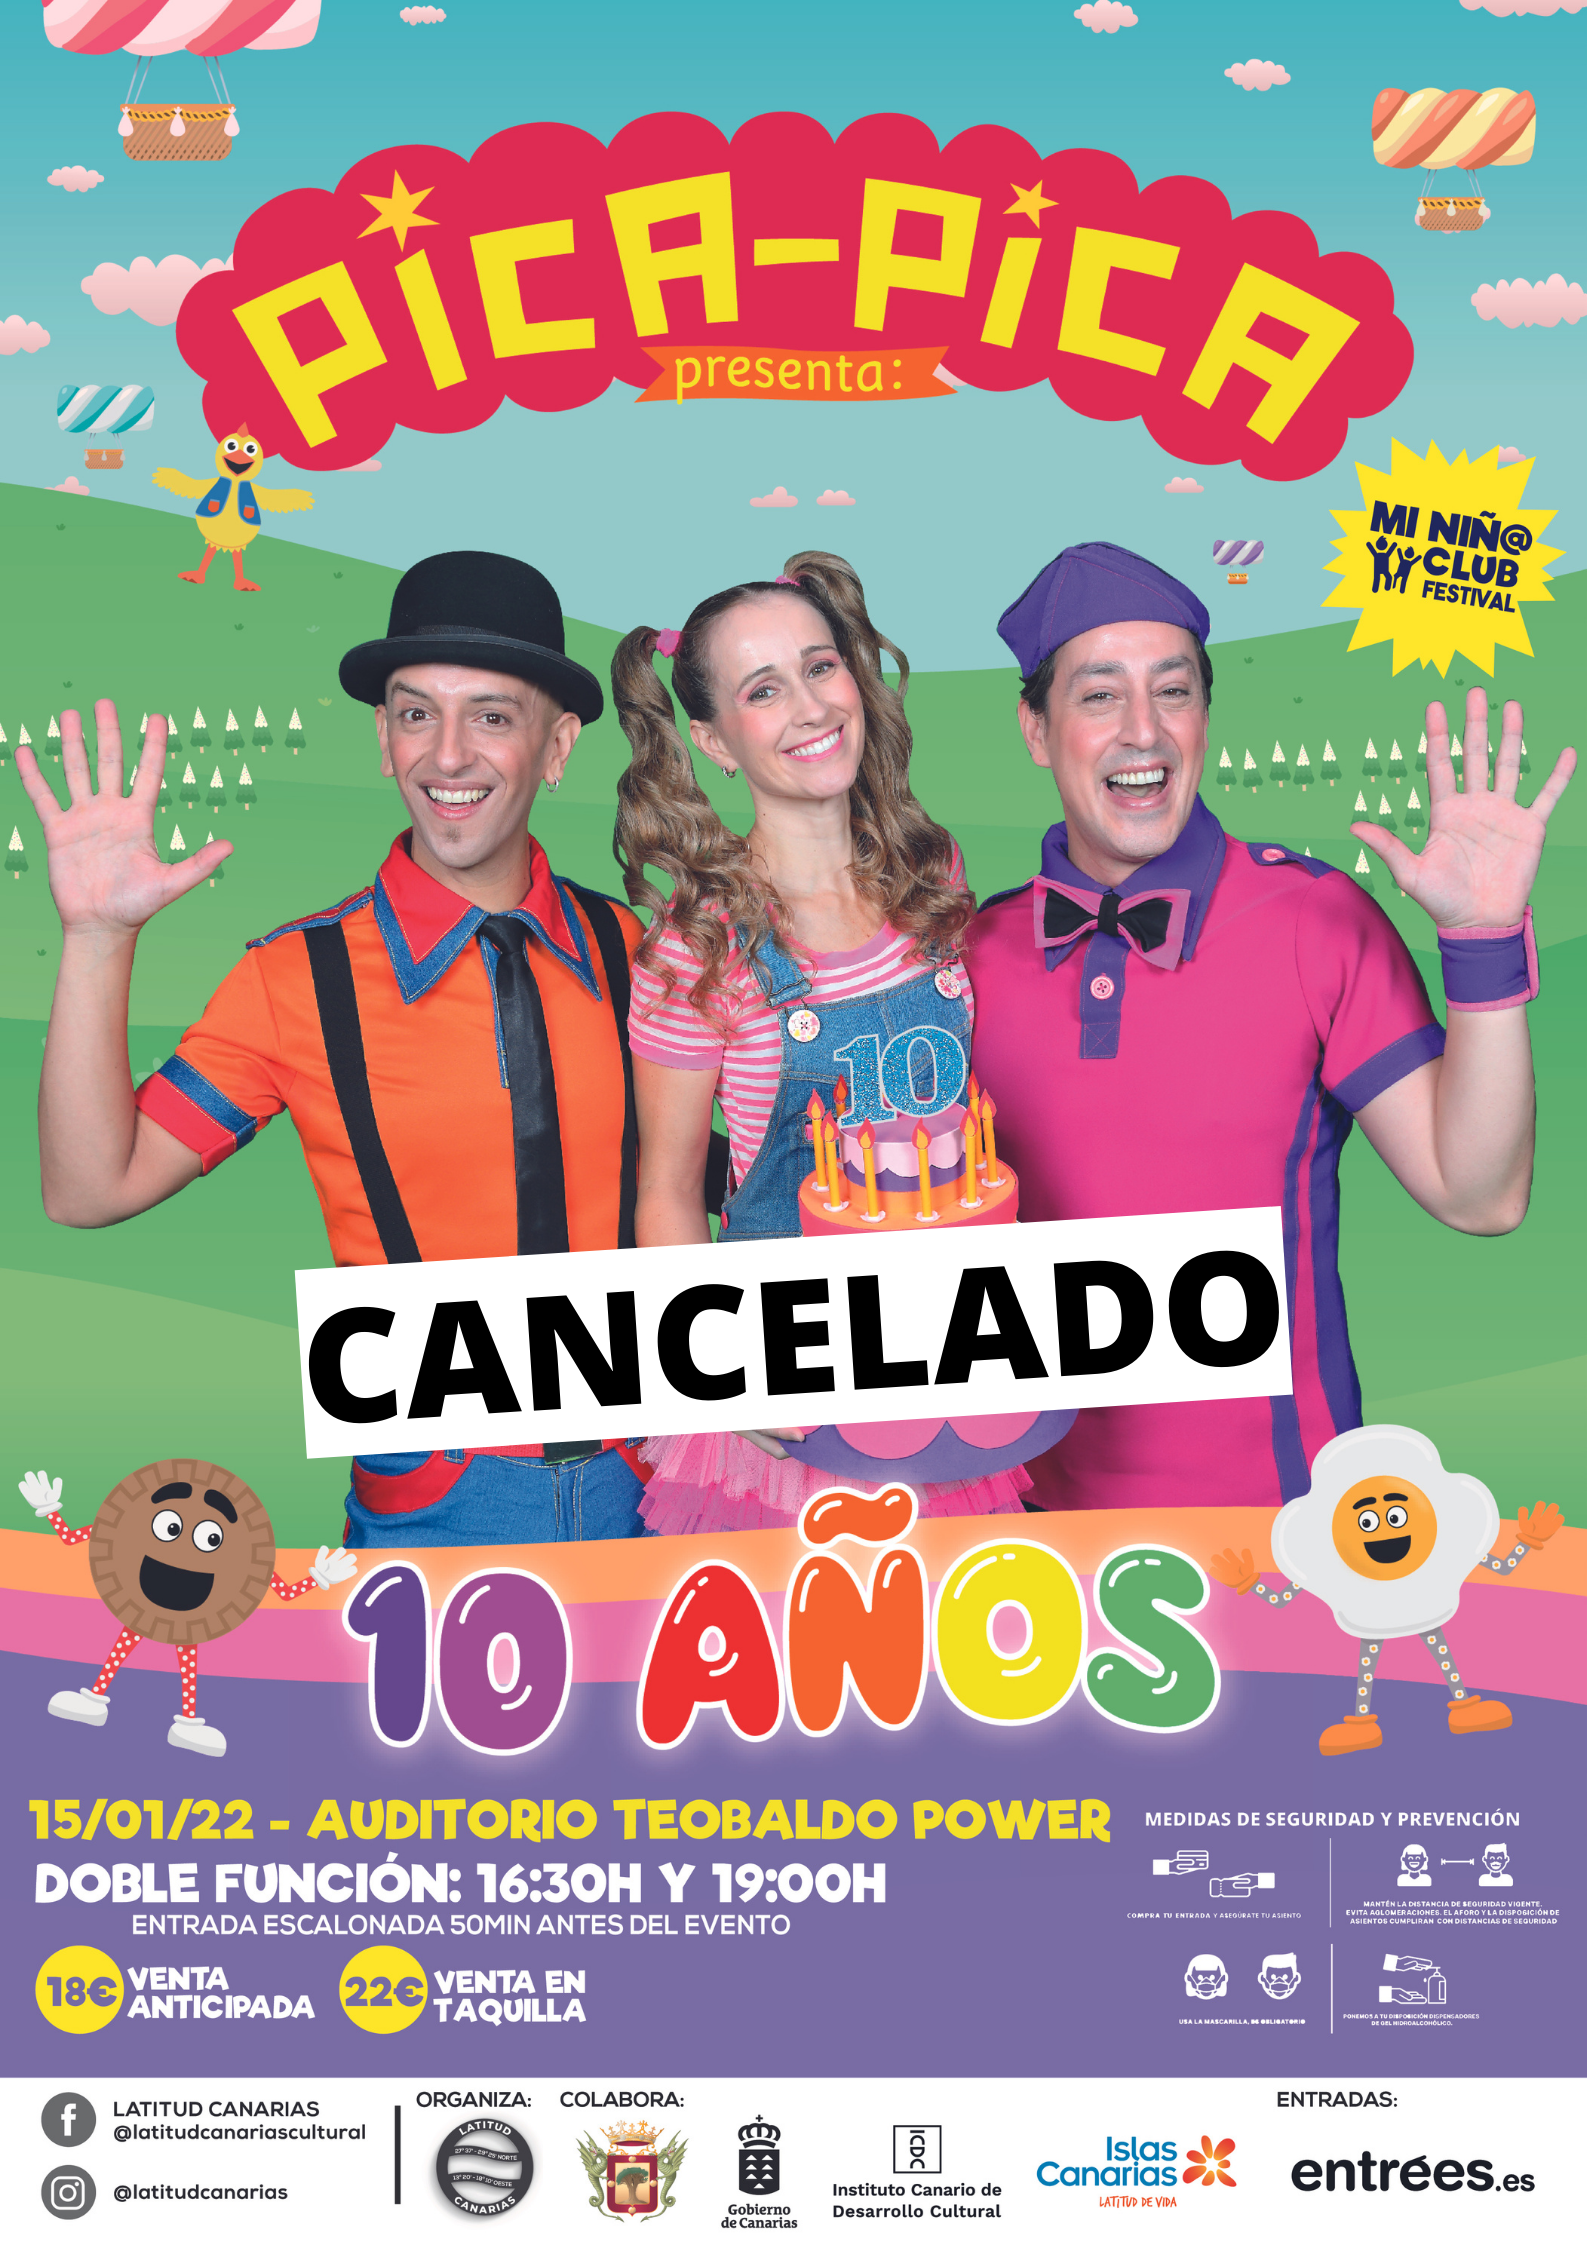 Cancelado el espectáculo Pica-Pica previsto para este fin de semana en el Teobaldo Power